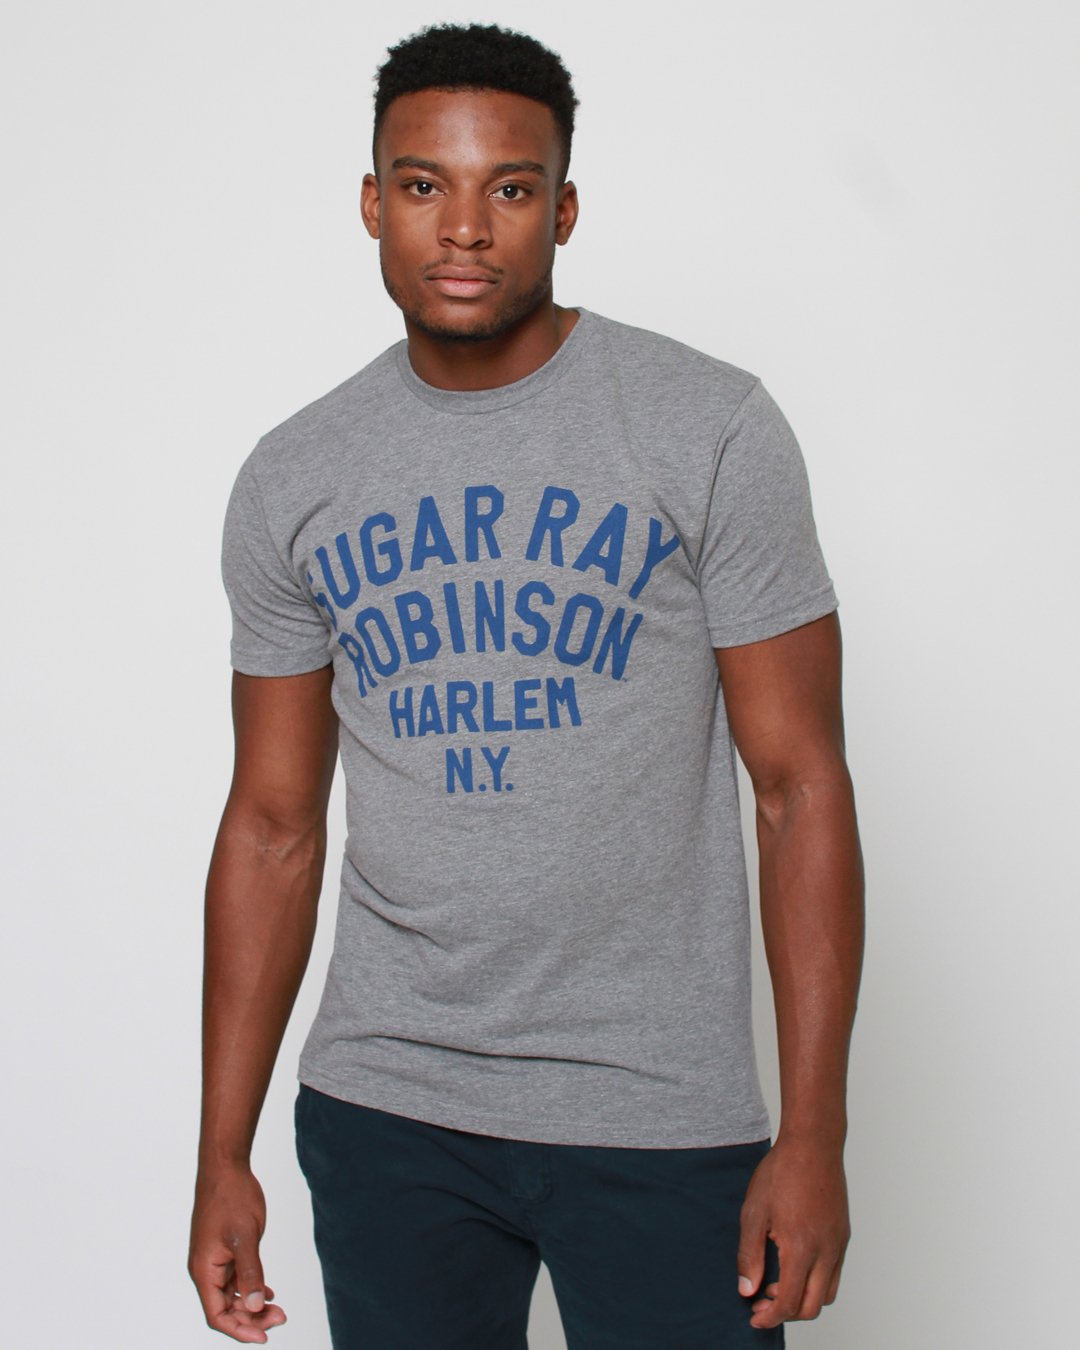 sugar ray robinson shirt